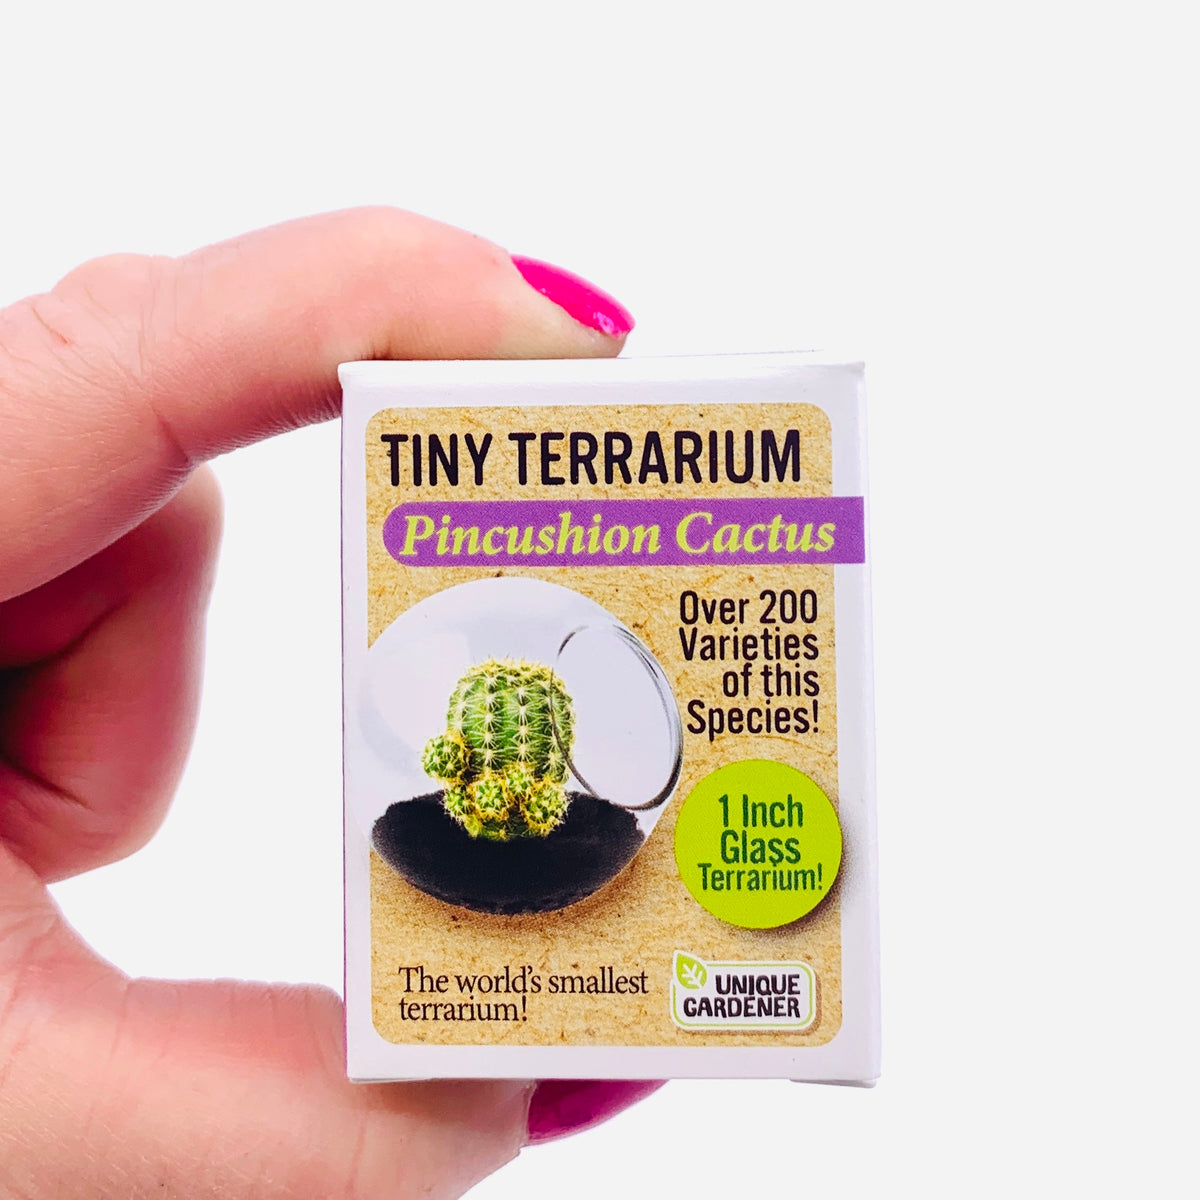 Tiny Terrarium, Pincushion Cactus